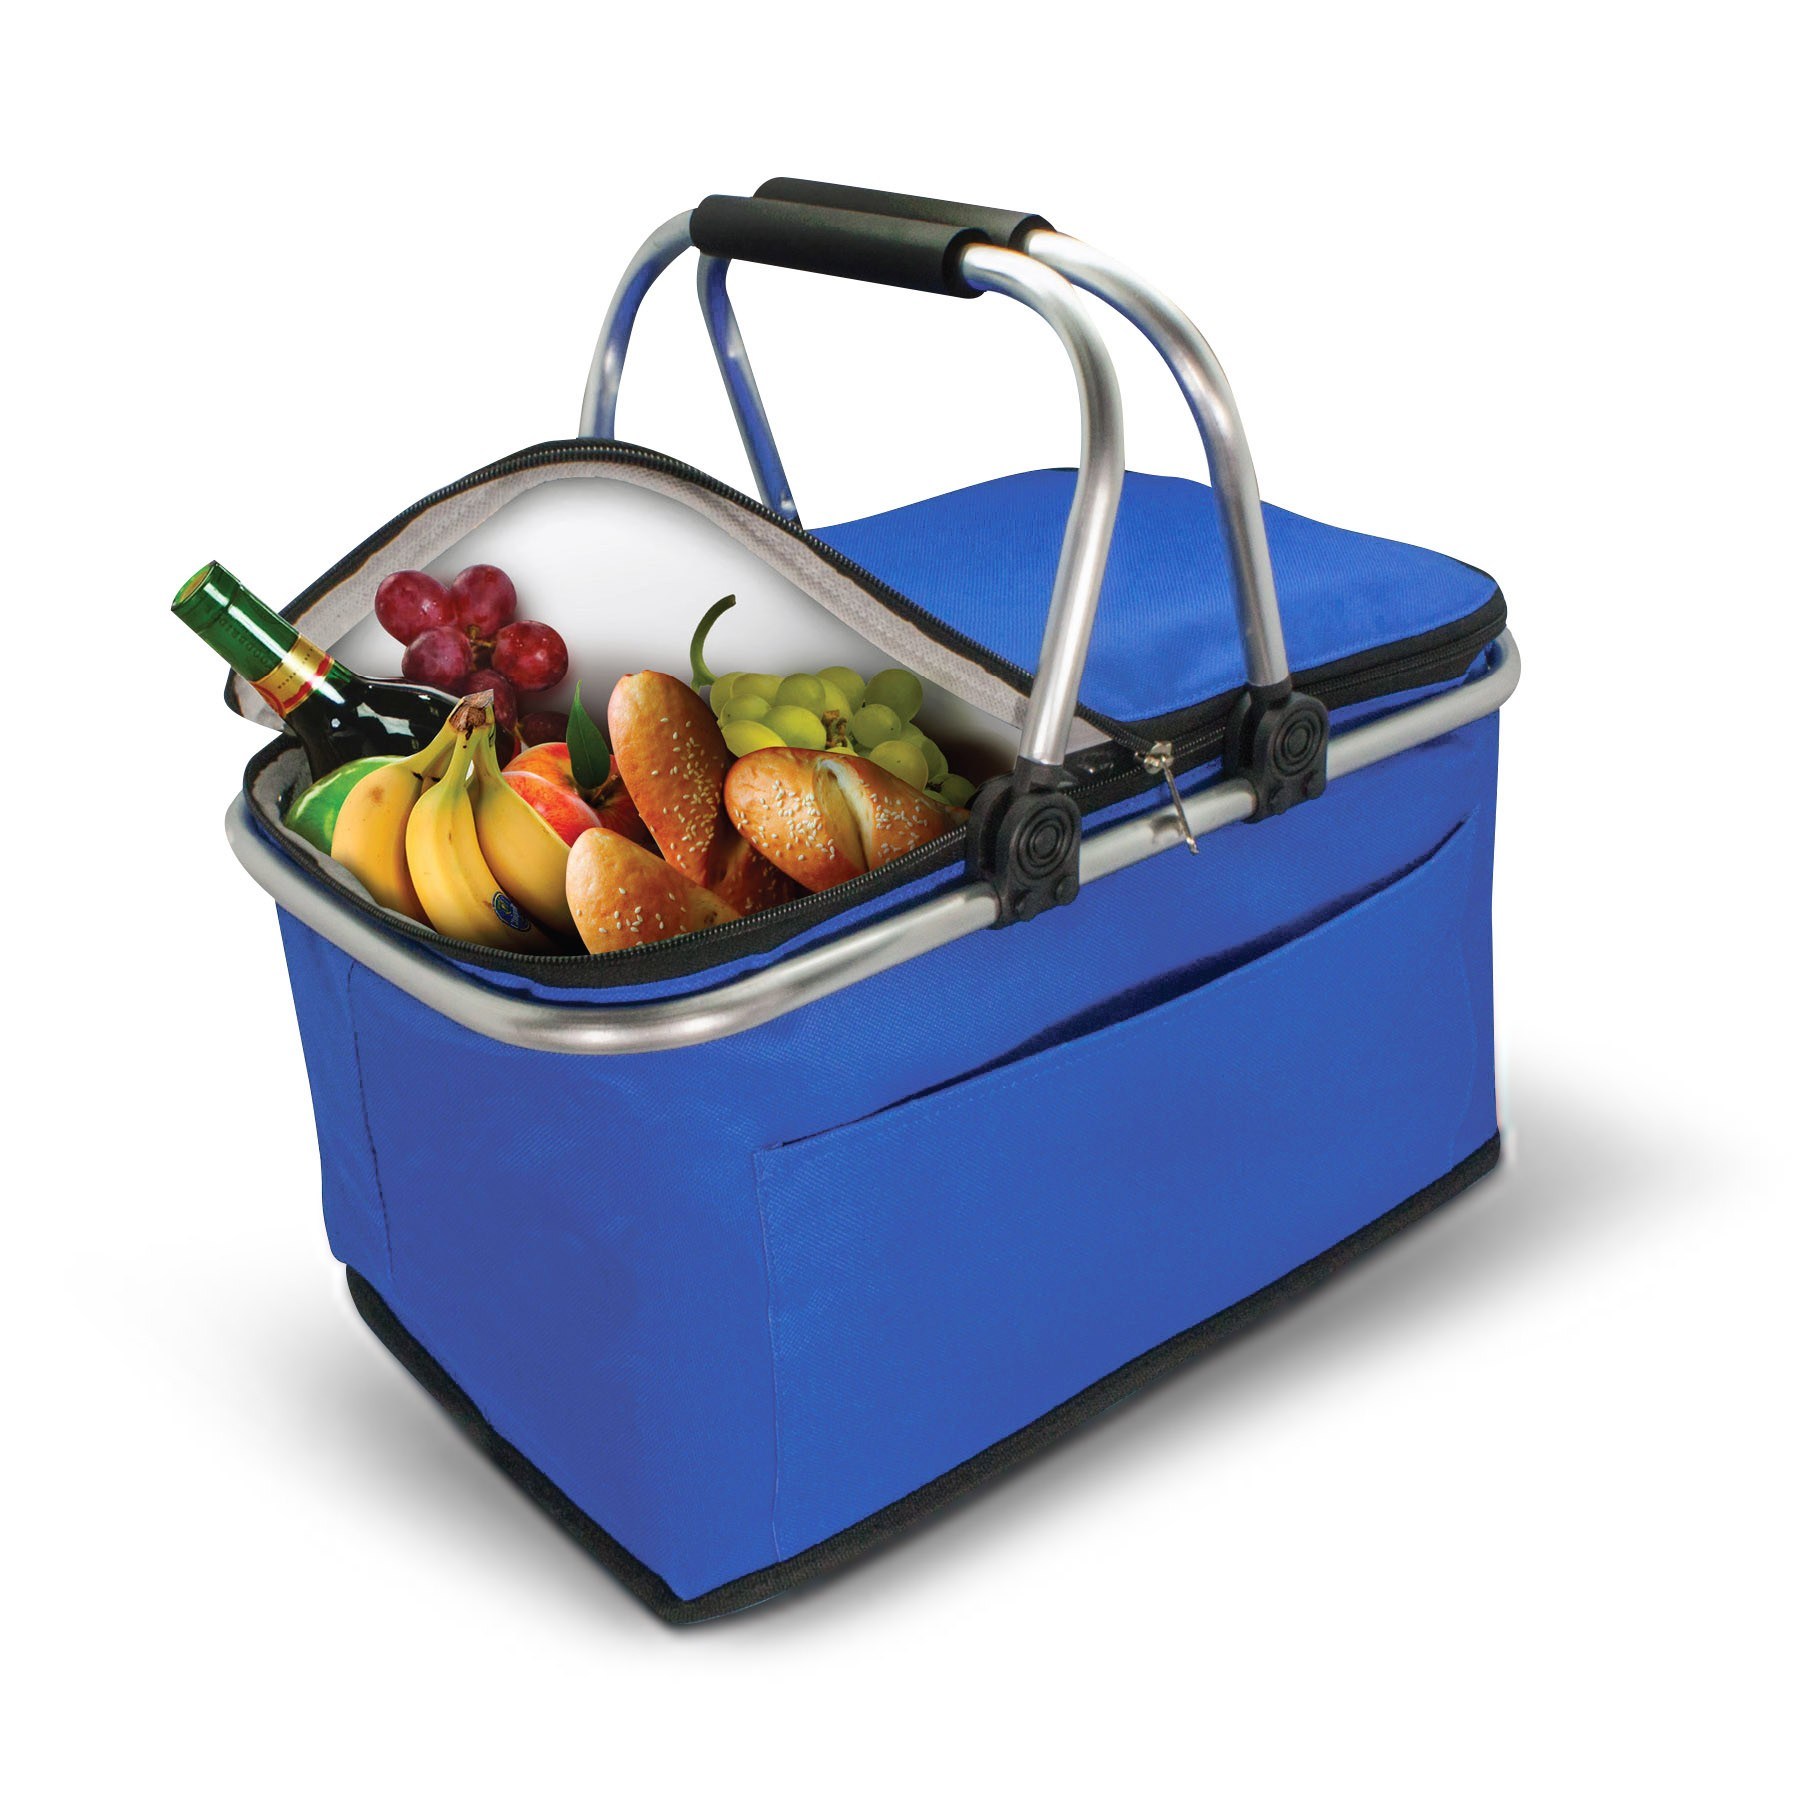 Custom-Insulated-Thermal-Folding-Basket-Food-Delivery-Picnic-Camping-Handbag-Lunch-Basket-Cooler-Bag-Picnic-Basket (2)